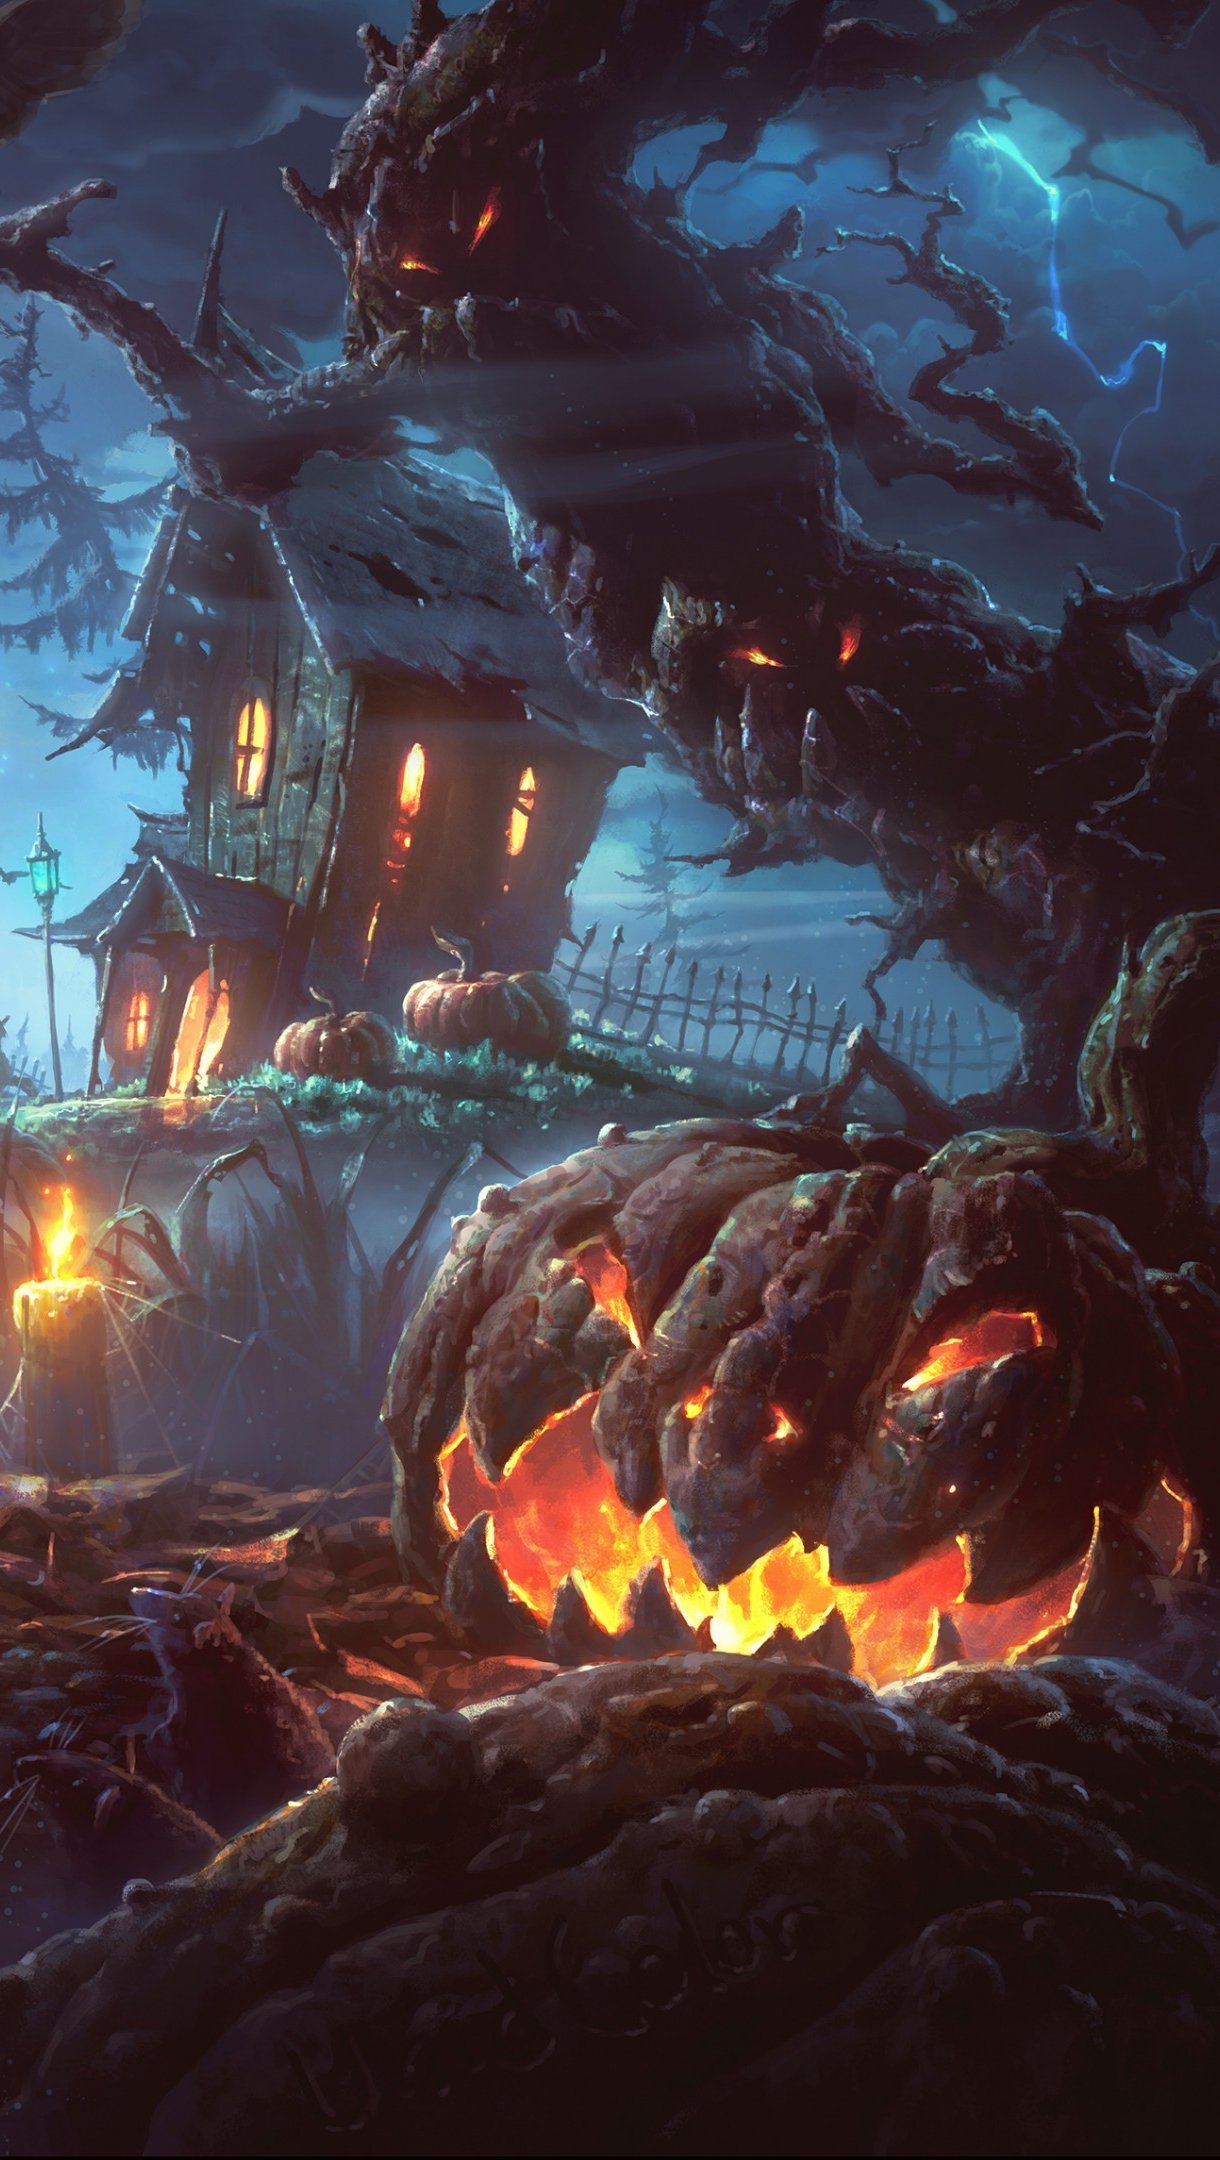 Fondos de pantalla Casa embrujada en Halloween Vertical